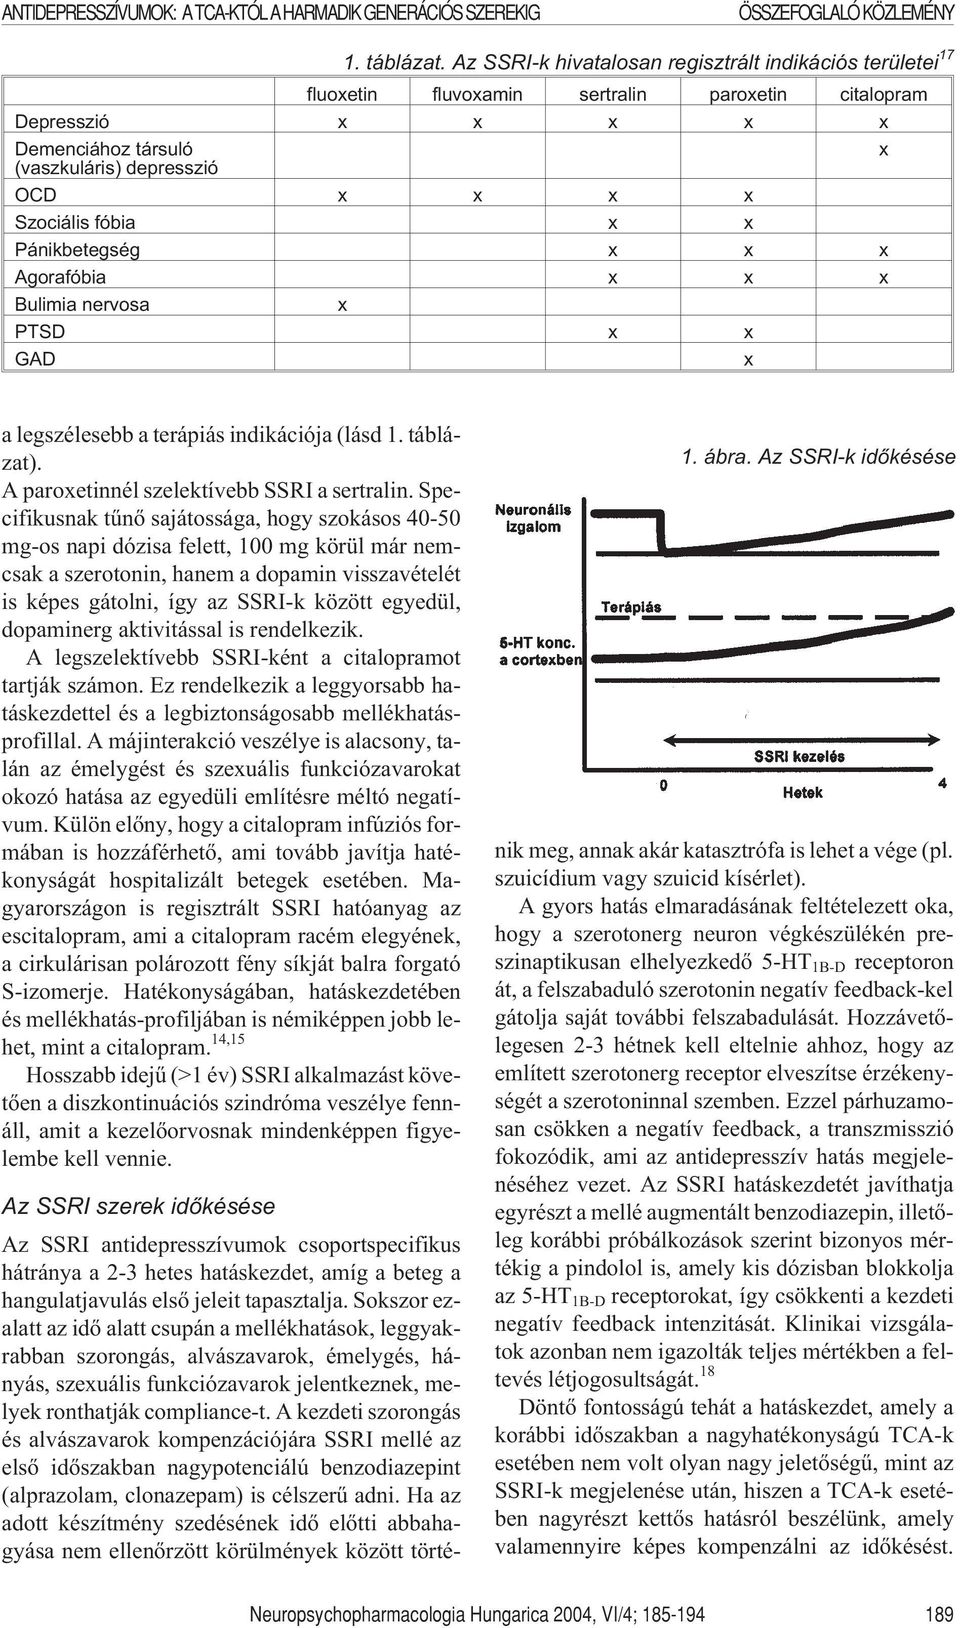 fóbia x x Pánikbetegség x x x Agorafóbia x x x Bulimia nervosa x PTSD x x GAD x a legszélesebb a terápiás indikációja (lásd 1. táblázat). A paroxetinnél szelektívebb SSRI a sertralin.